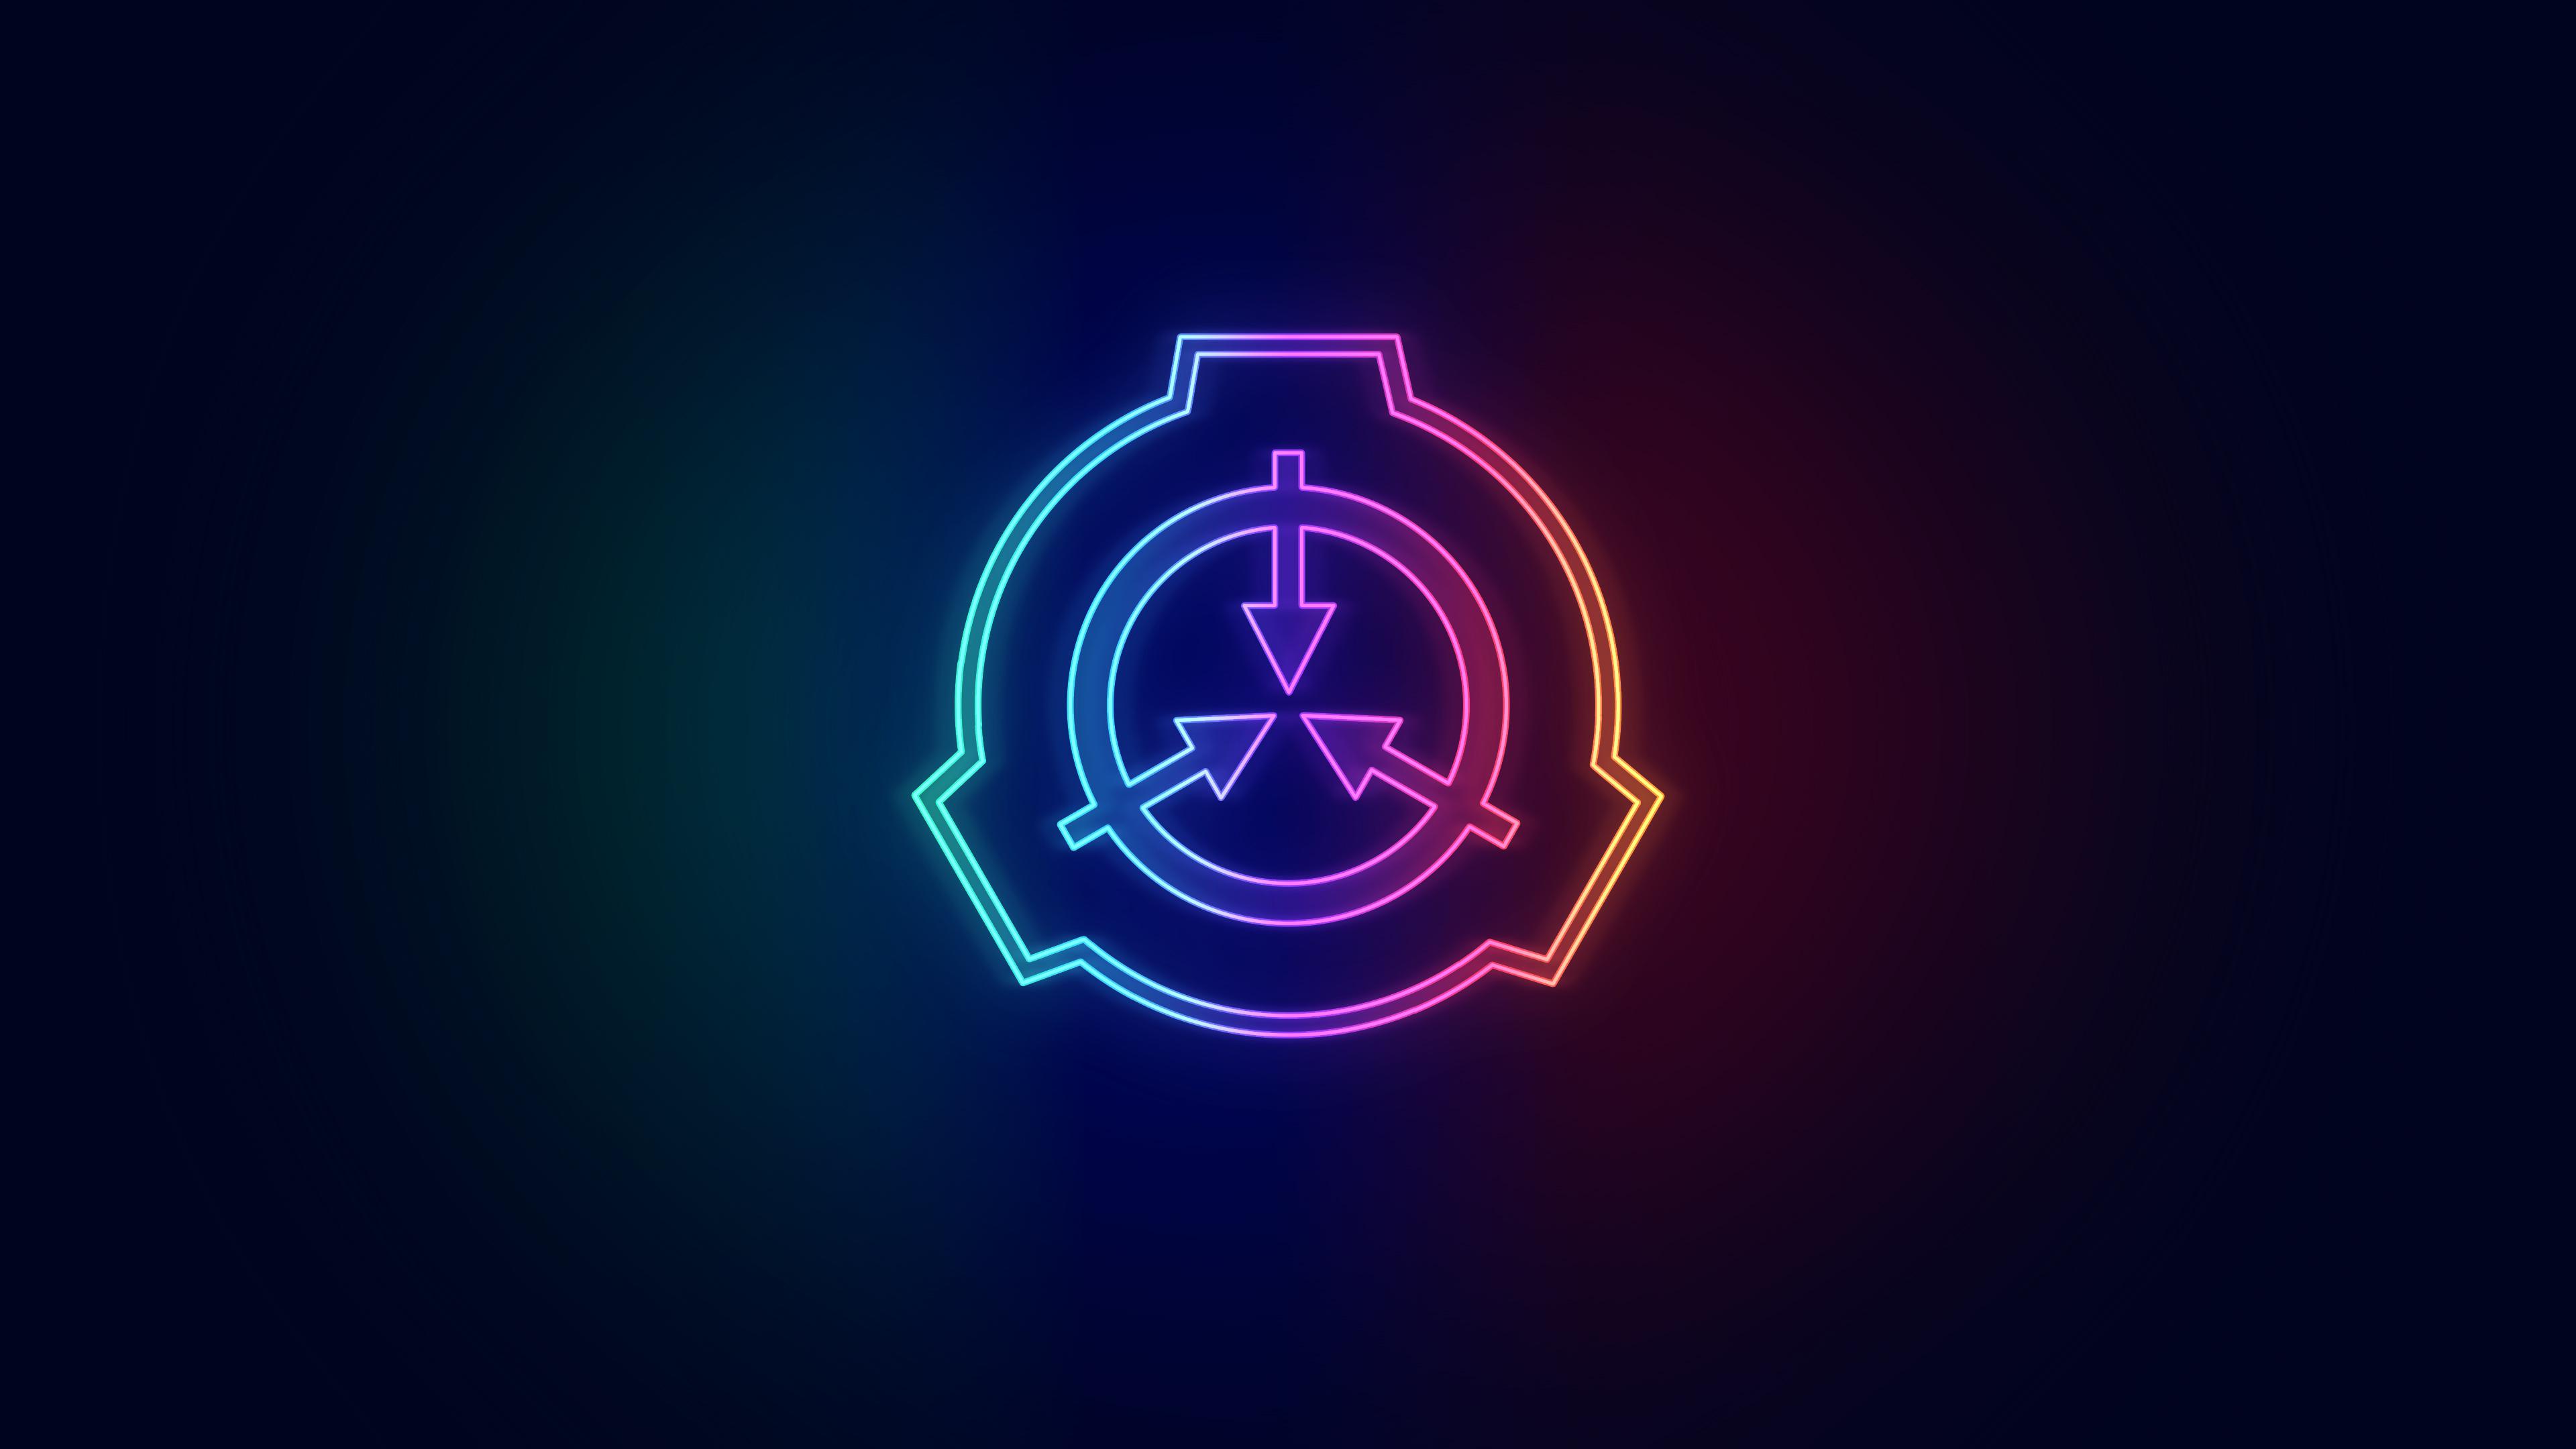 A neon SCP logo Wallpaper I made [3840 x 2160]